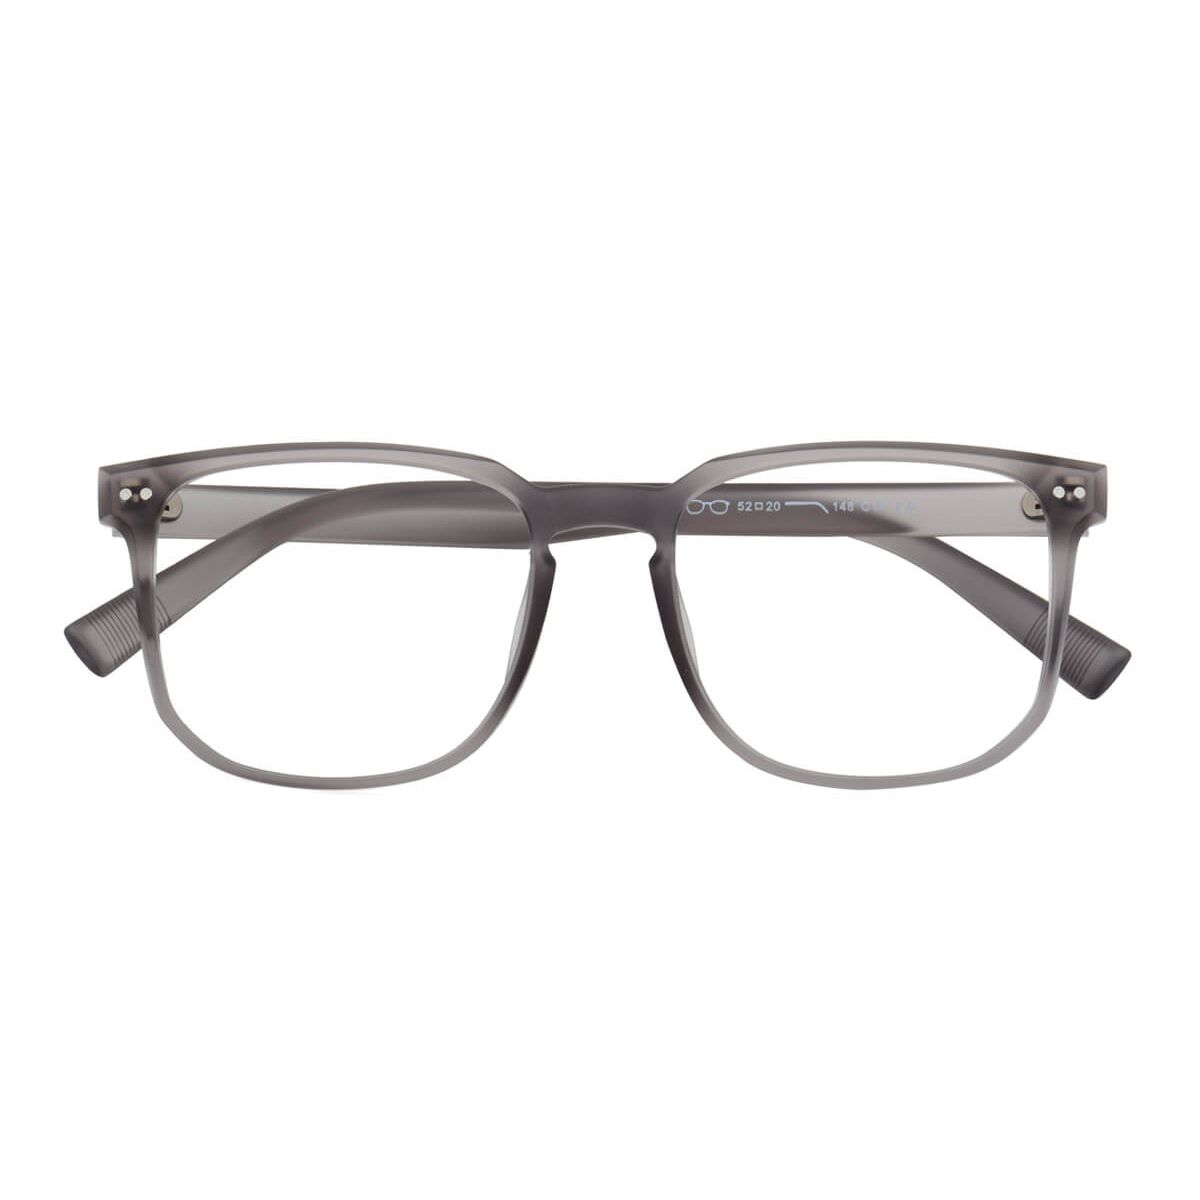 T7144 Oval Gray Eyeglasses Frames | Leoptique